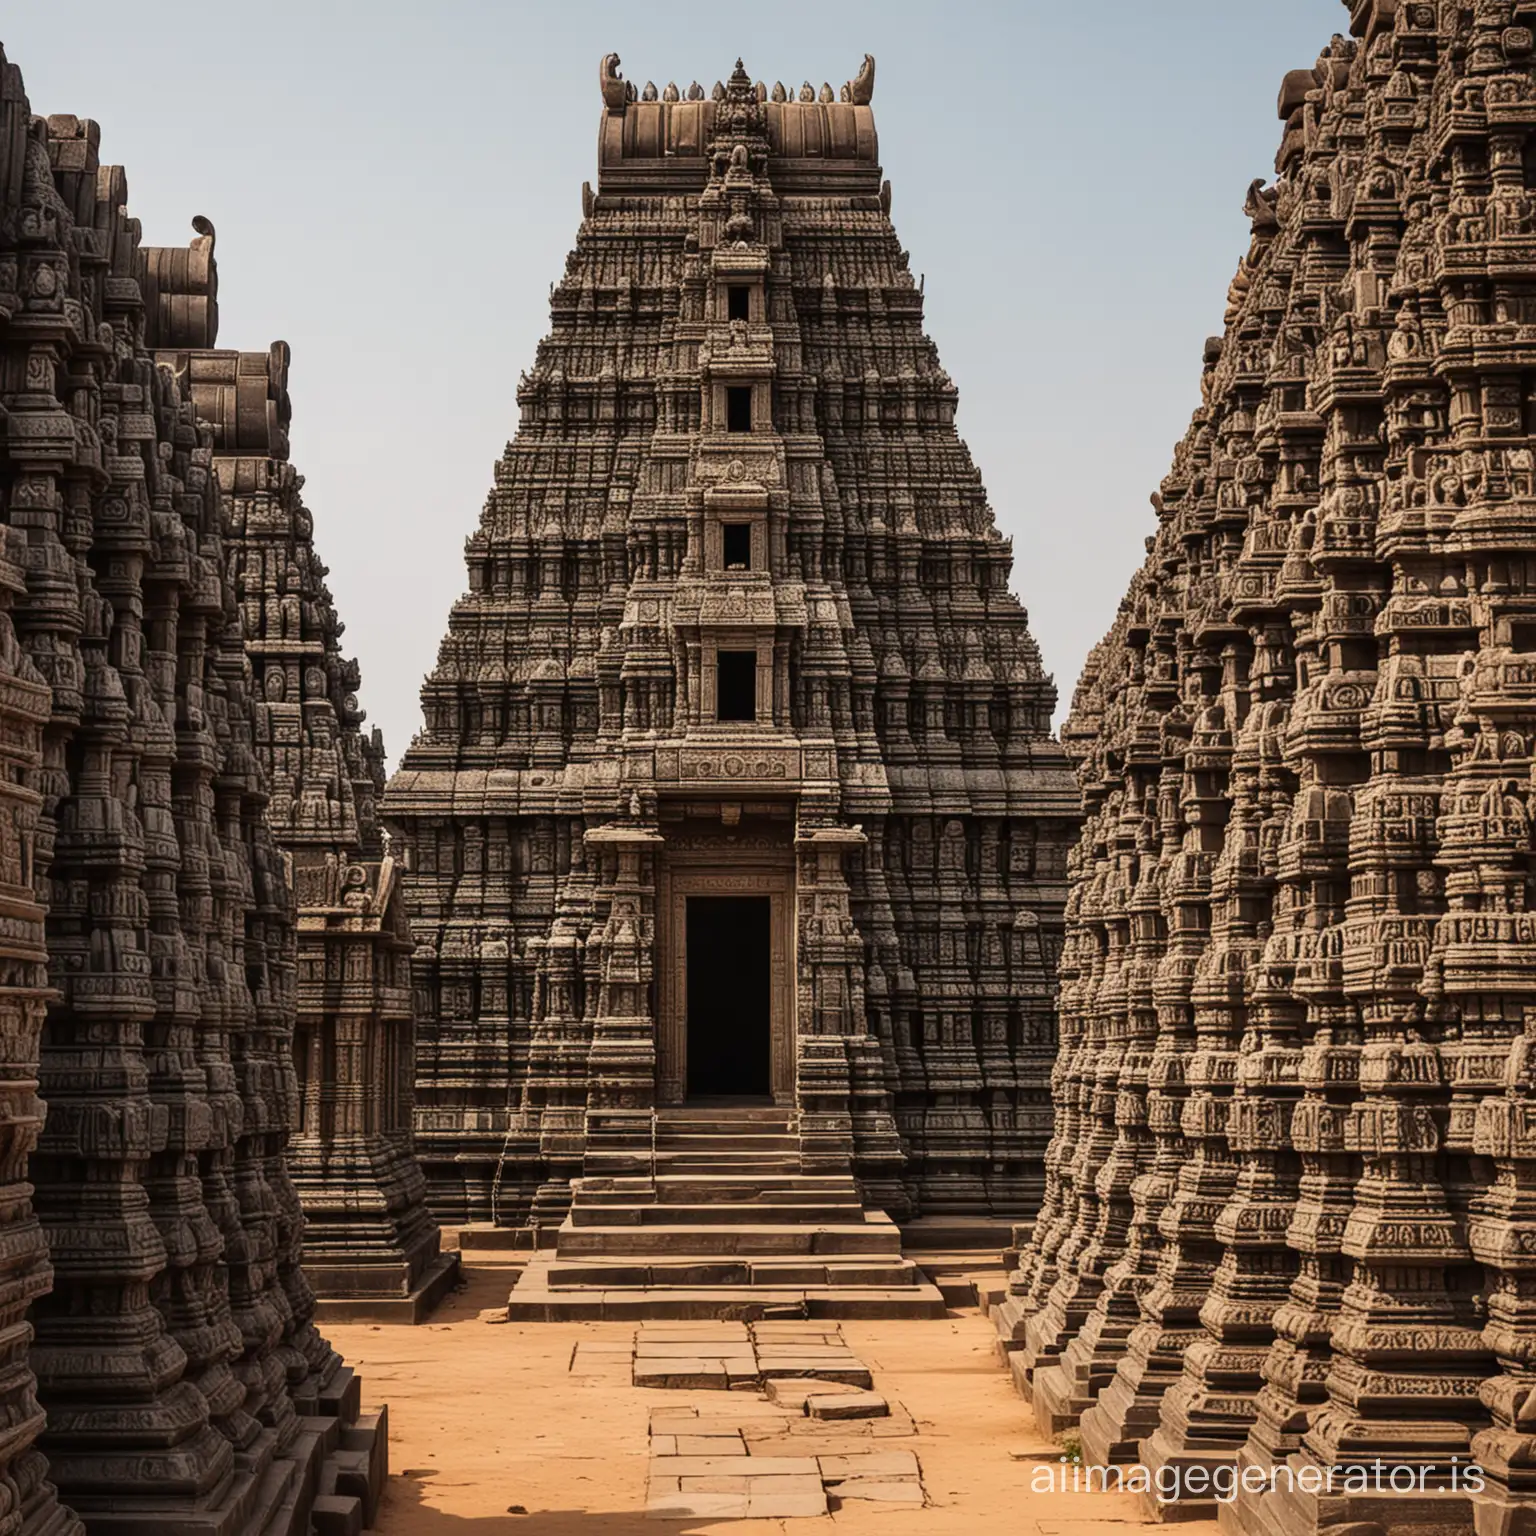 tamilnadu temples